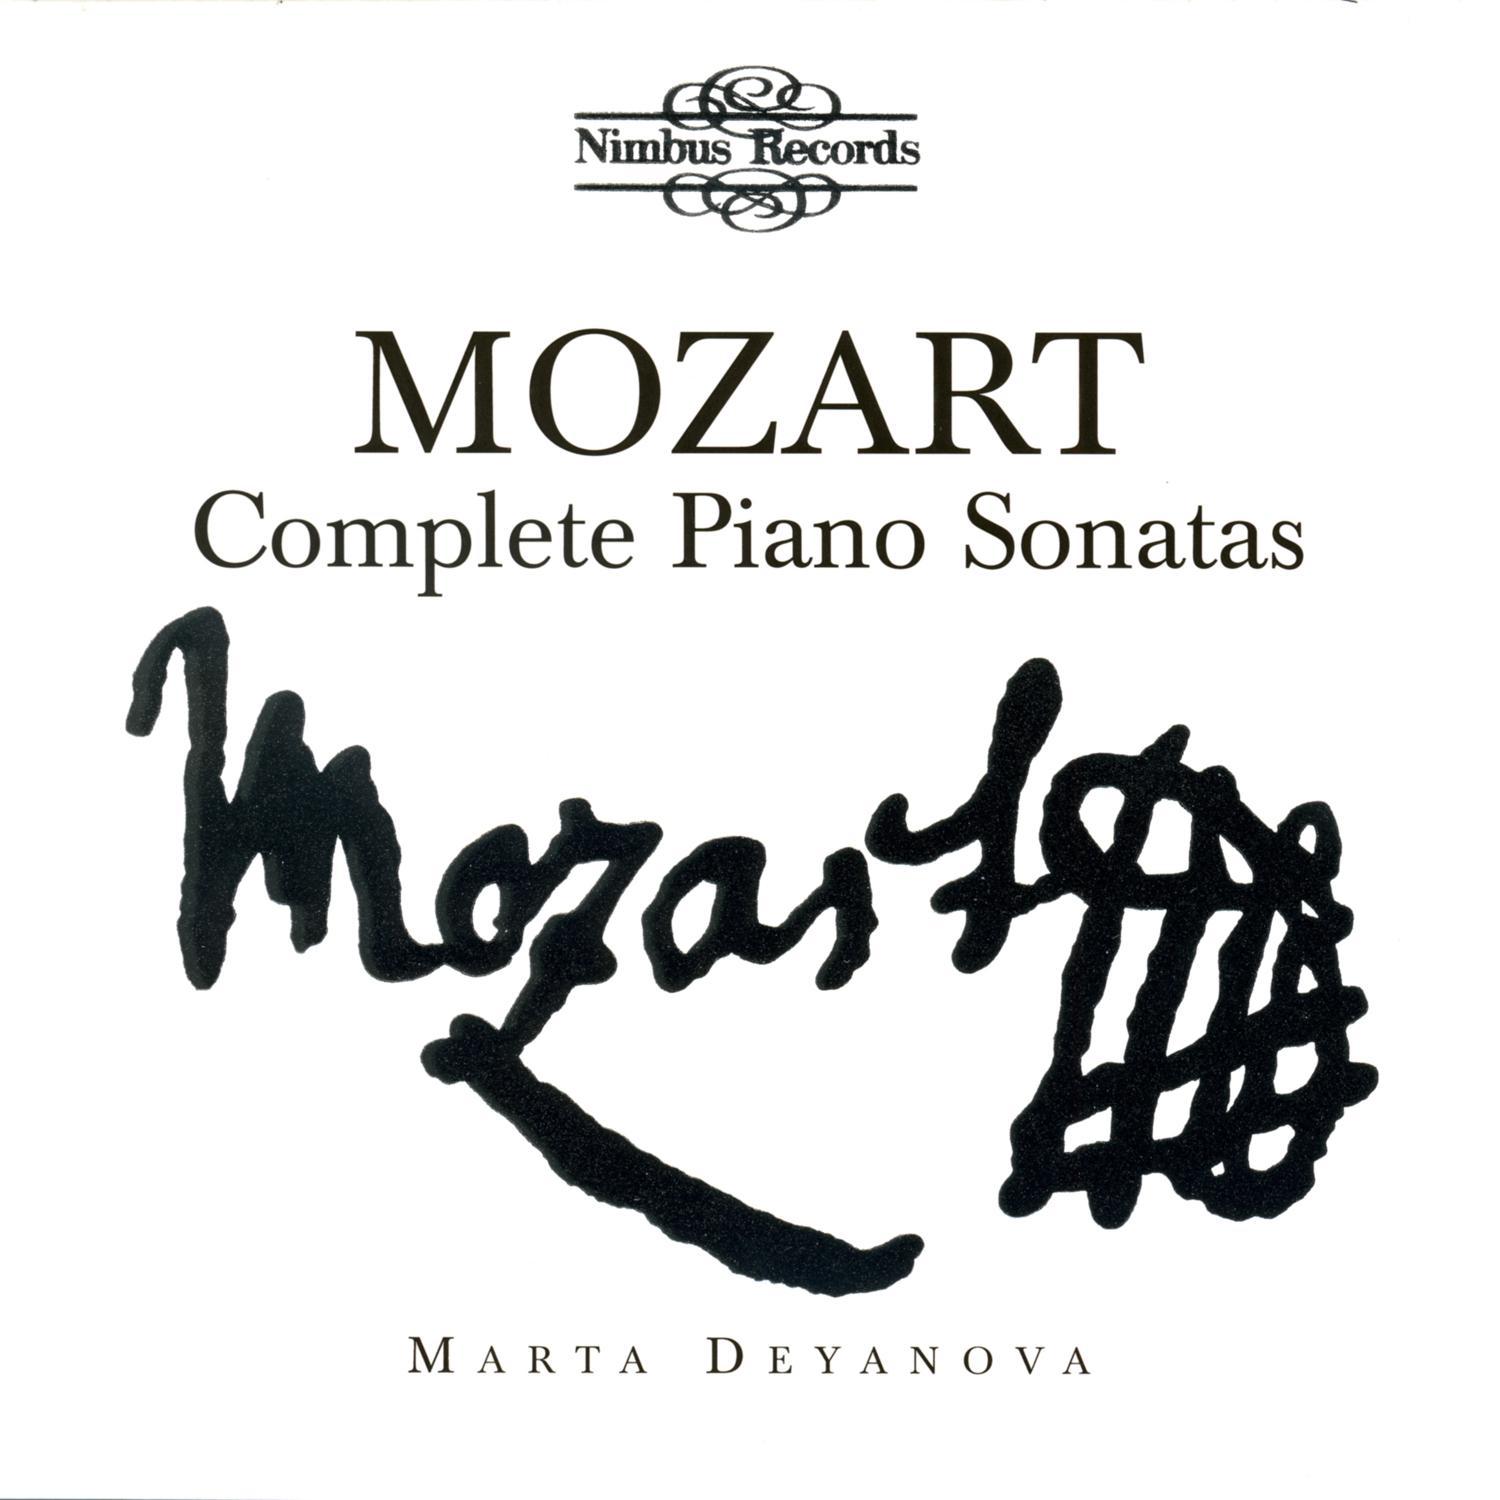 Piano Sonata in D Major, K. 576: II. Adagio